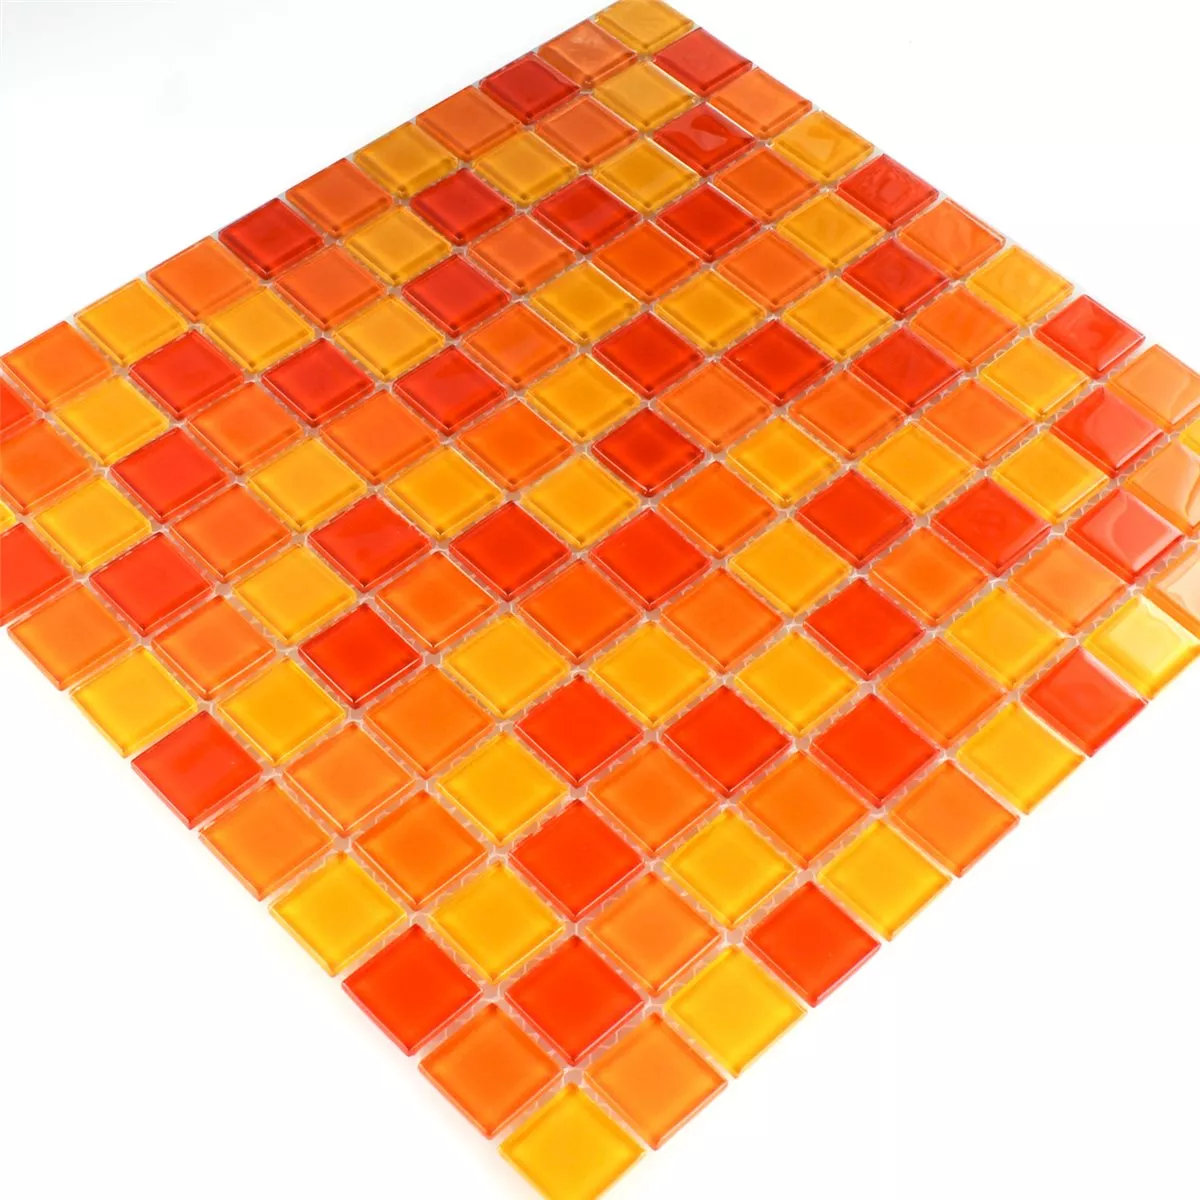 Mозаечни Плочки Стъклена Чаша Червен Портокал Жълто 25x25x4mm